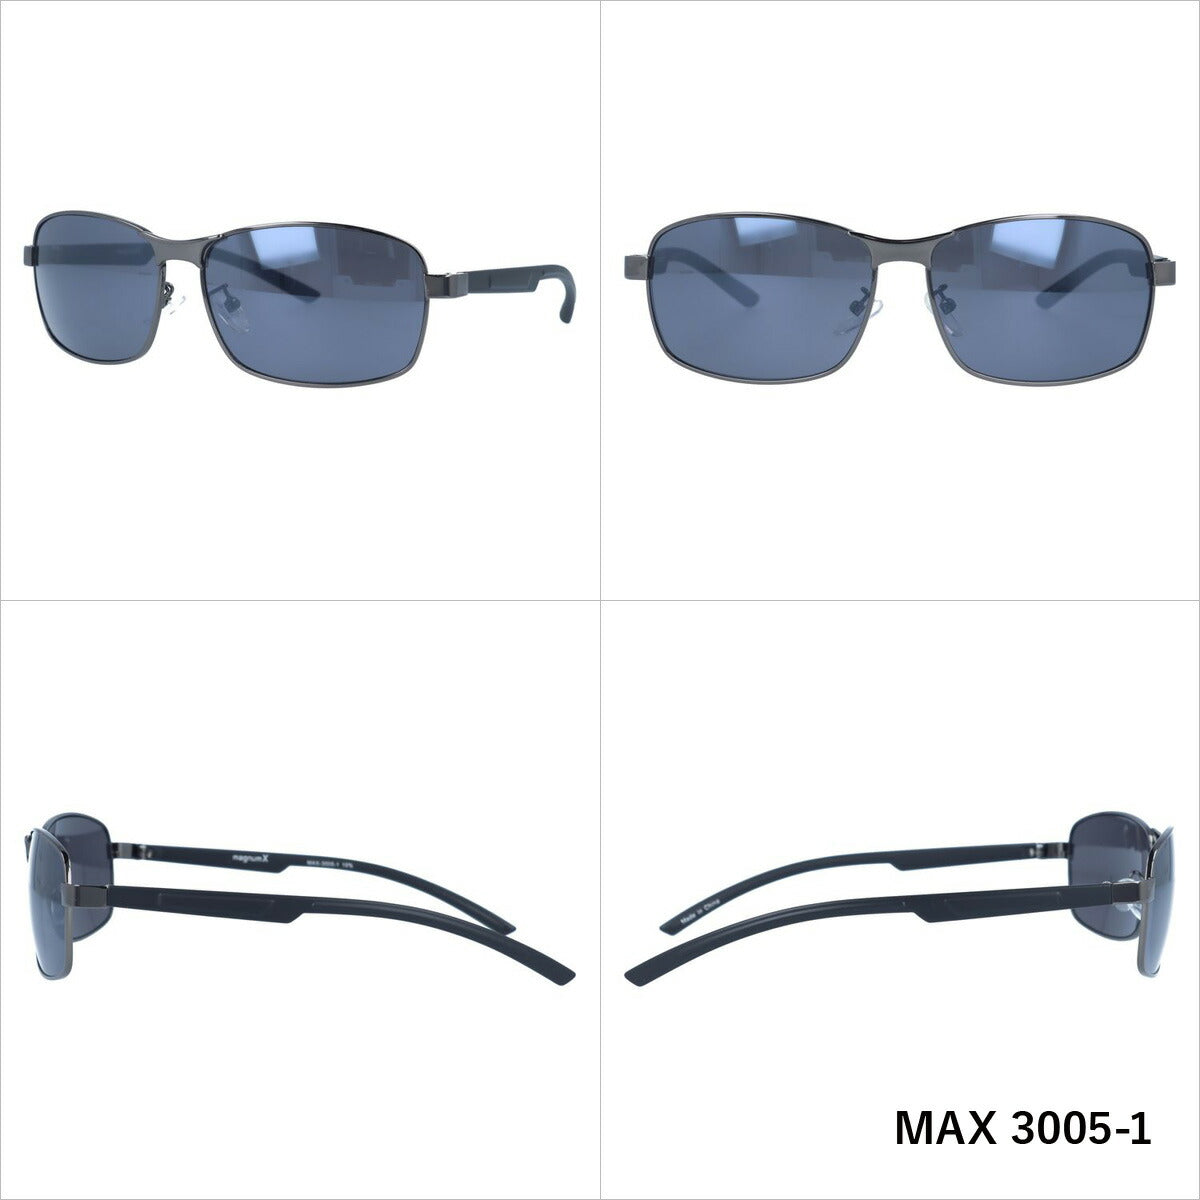 マグナムエックス サングラス ミラーレンズ magnumX MAX 3005 全3カラー 58サイズ スクエア メンズ レディース 紫外線対策 UVカット おしゃれ プレゼント ギフト